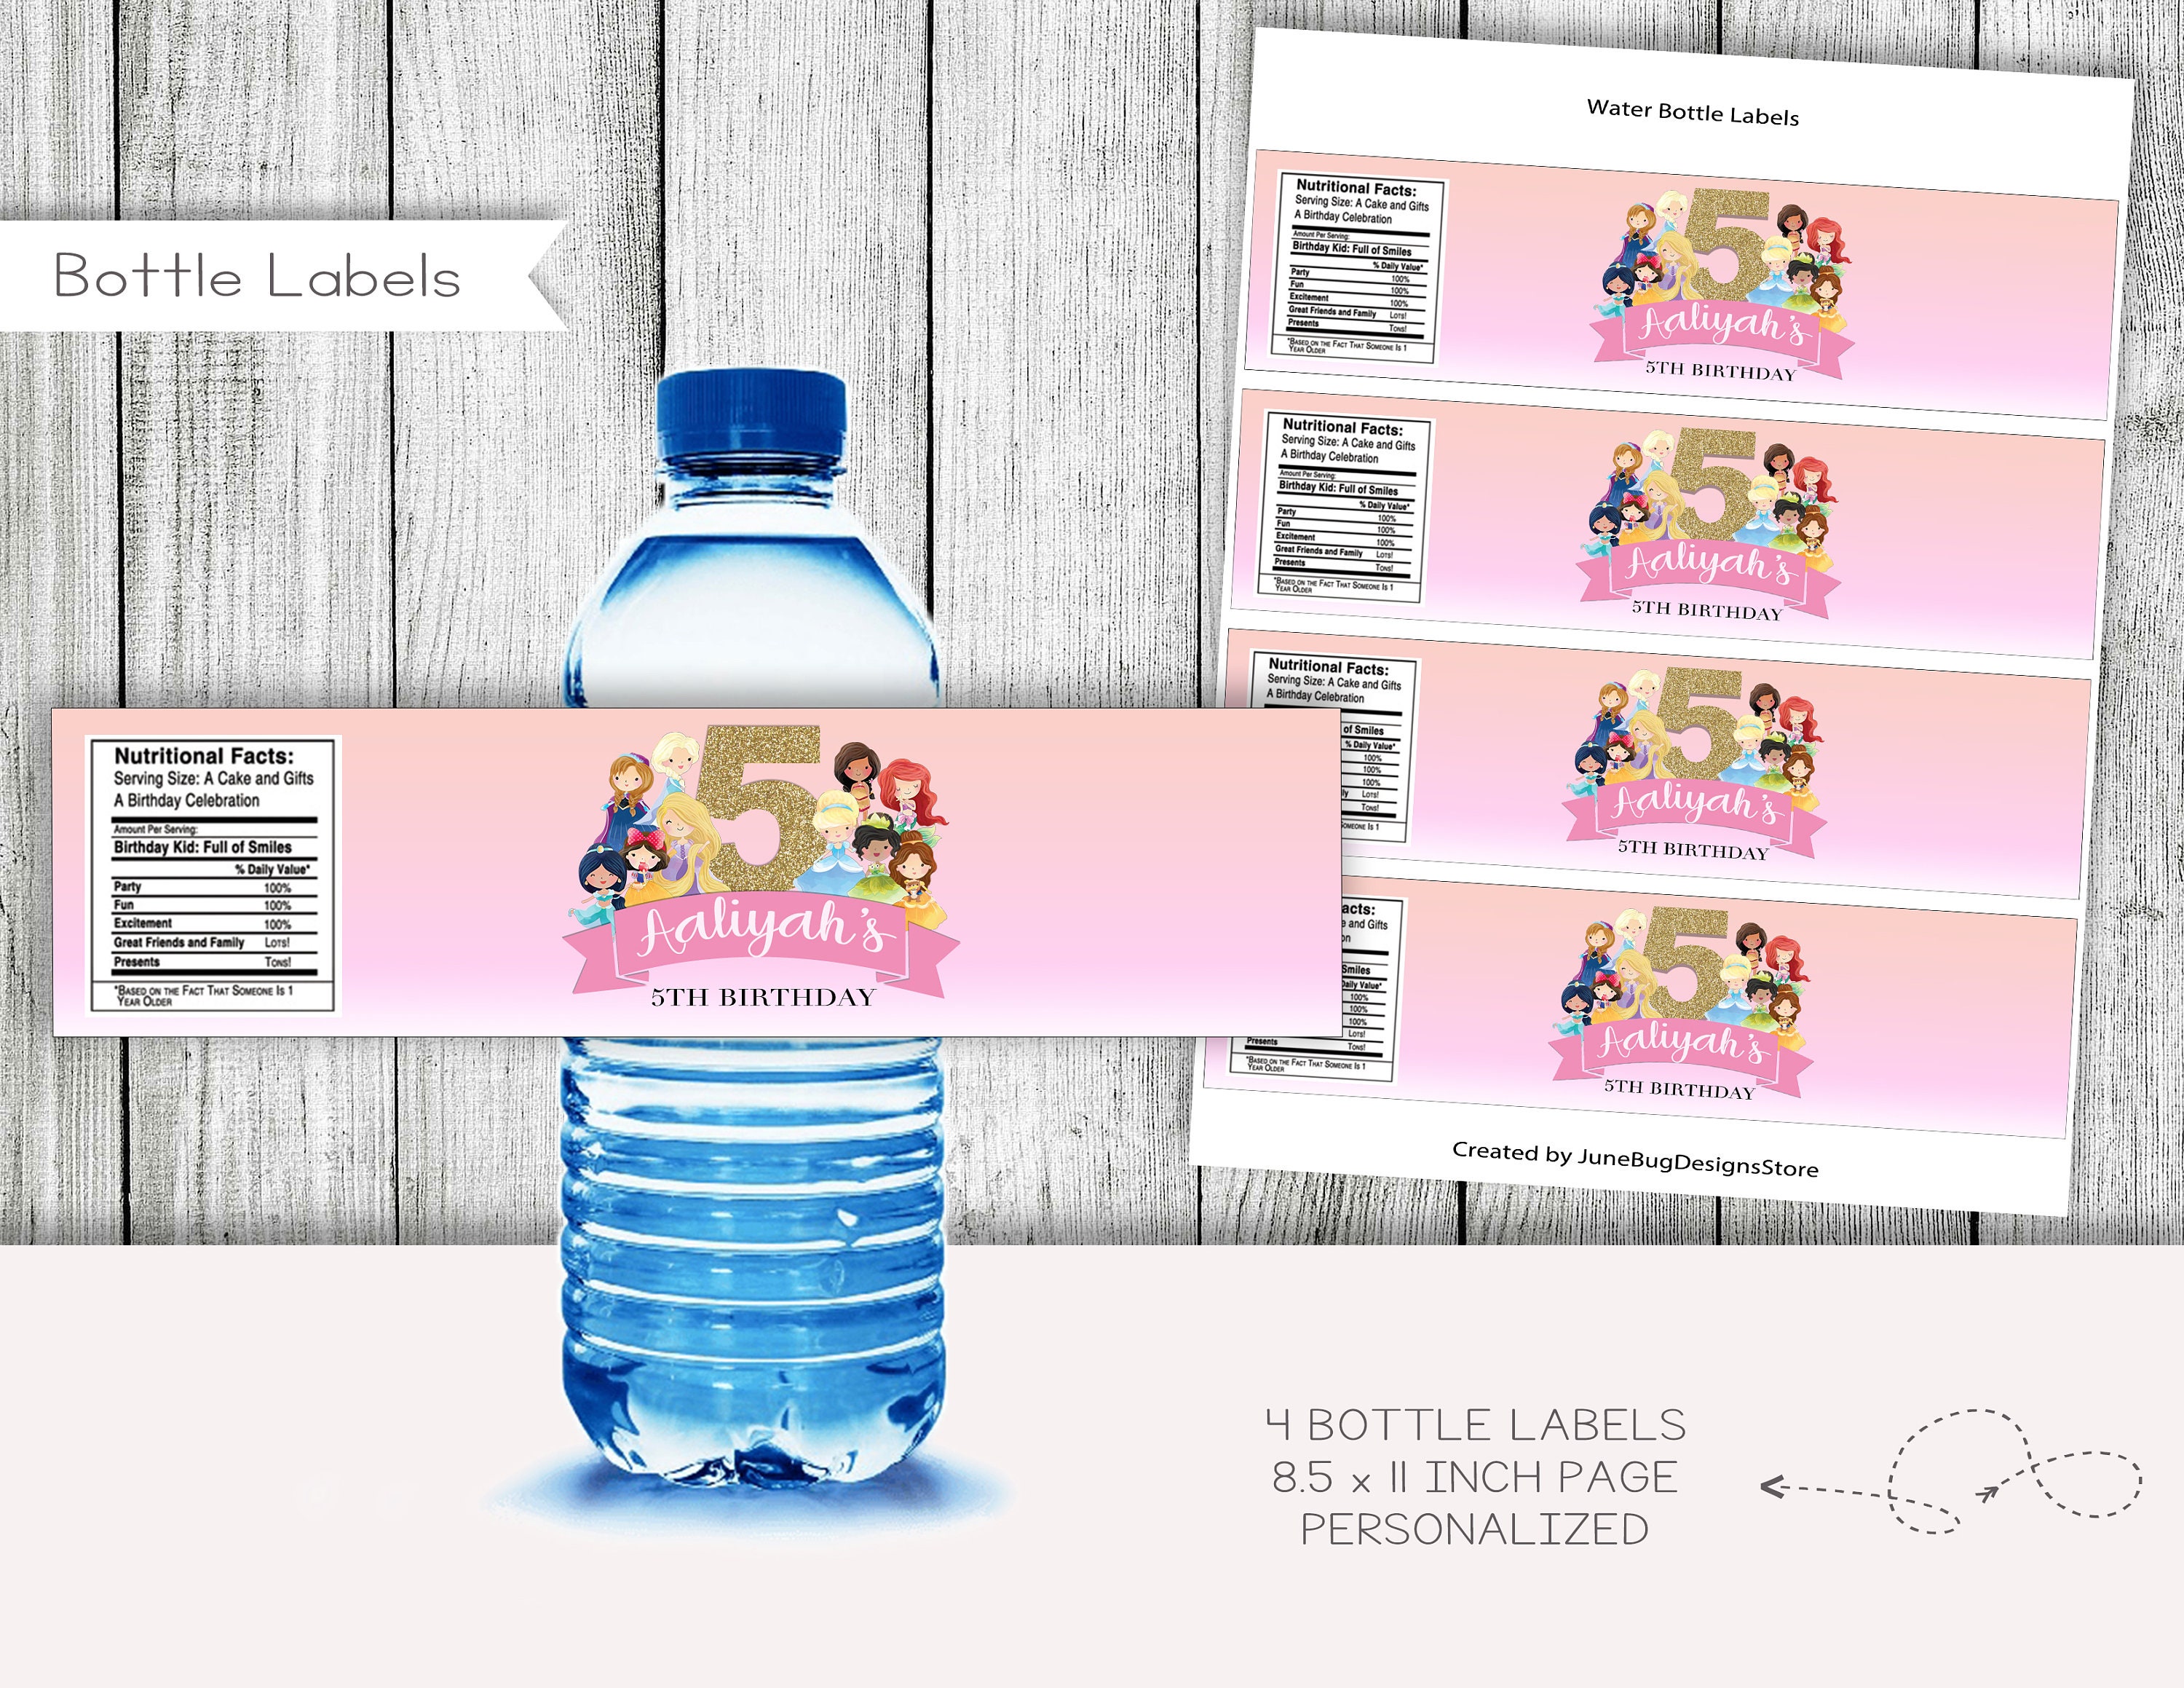 Déco à thème - 2,50 euros les étiquettes pour bouteilles d'eau thème  cendrillon  -bapteme-arche-ballon-cierge-bougie-bapteme/489-etiquette-petite-bouteille-d -eau-cendrillon-pour-la-decoration-de